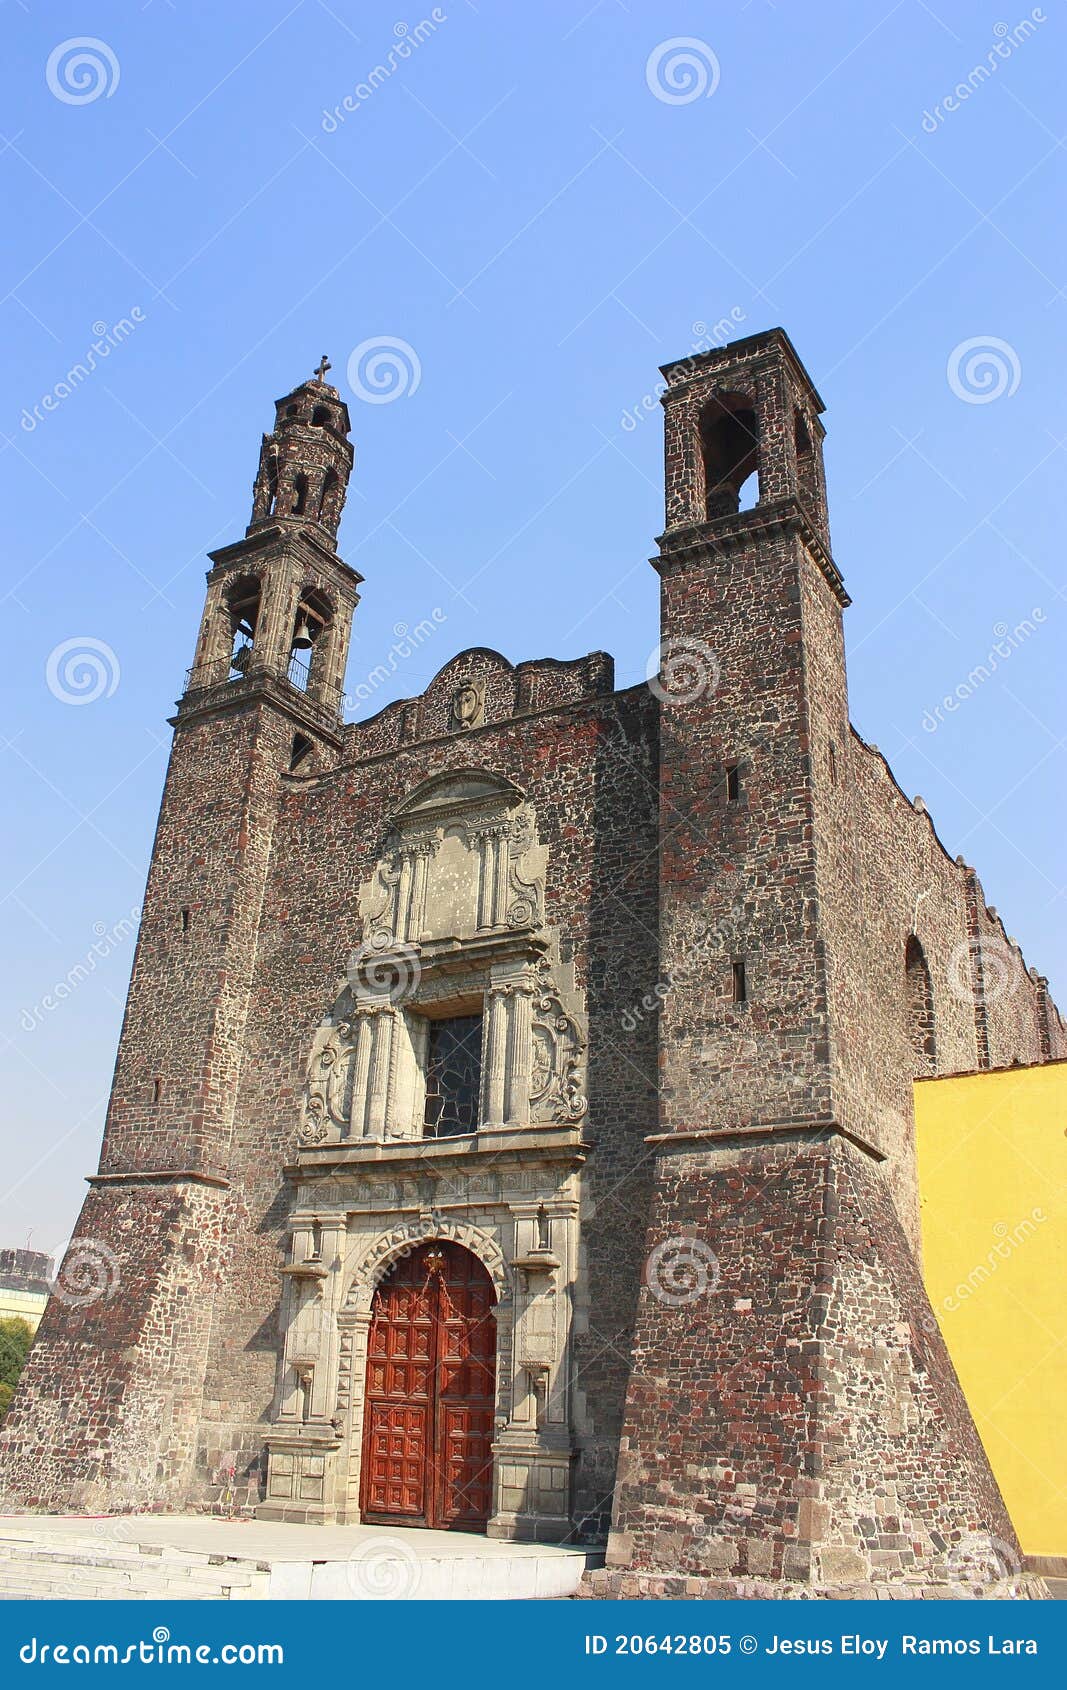 santiago church in tlatelolco, mexico city